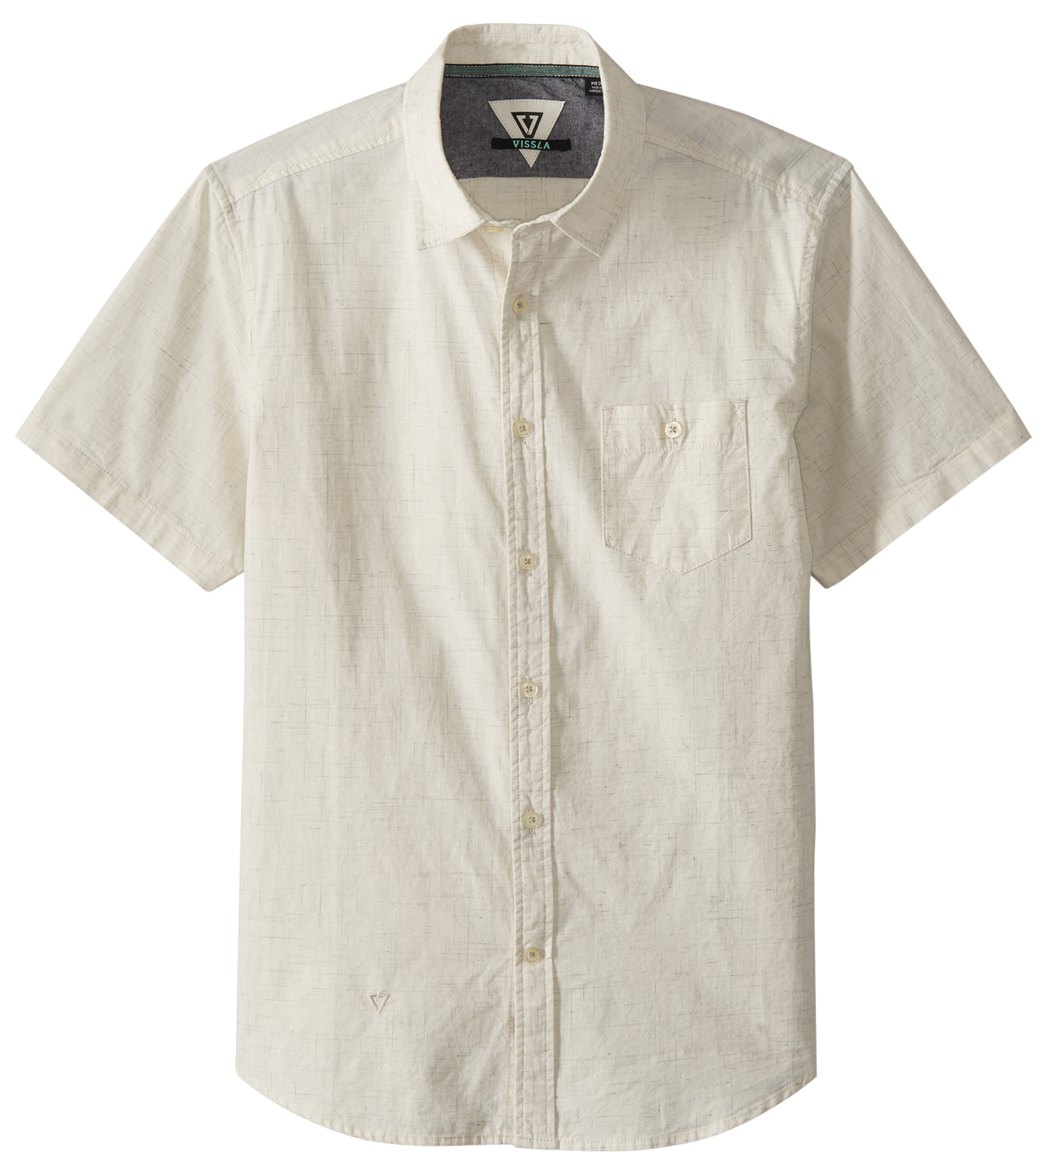 Vissla Men's Happens Short Sleeve Shirt - Vintage White Small Cotton - Swimoutlet.com